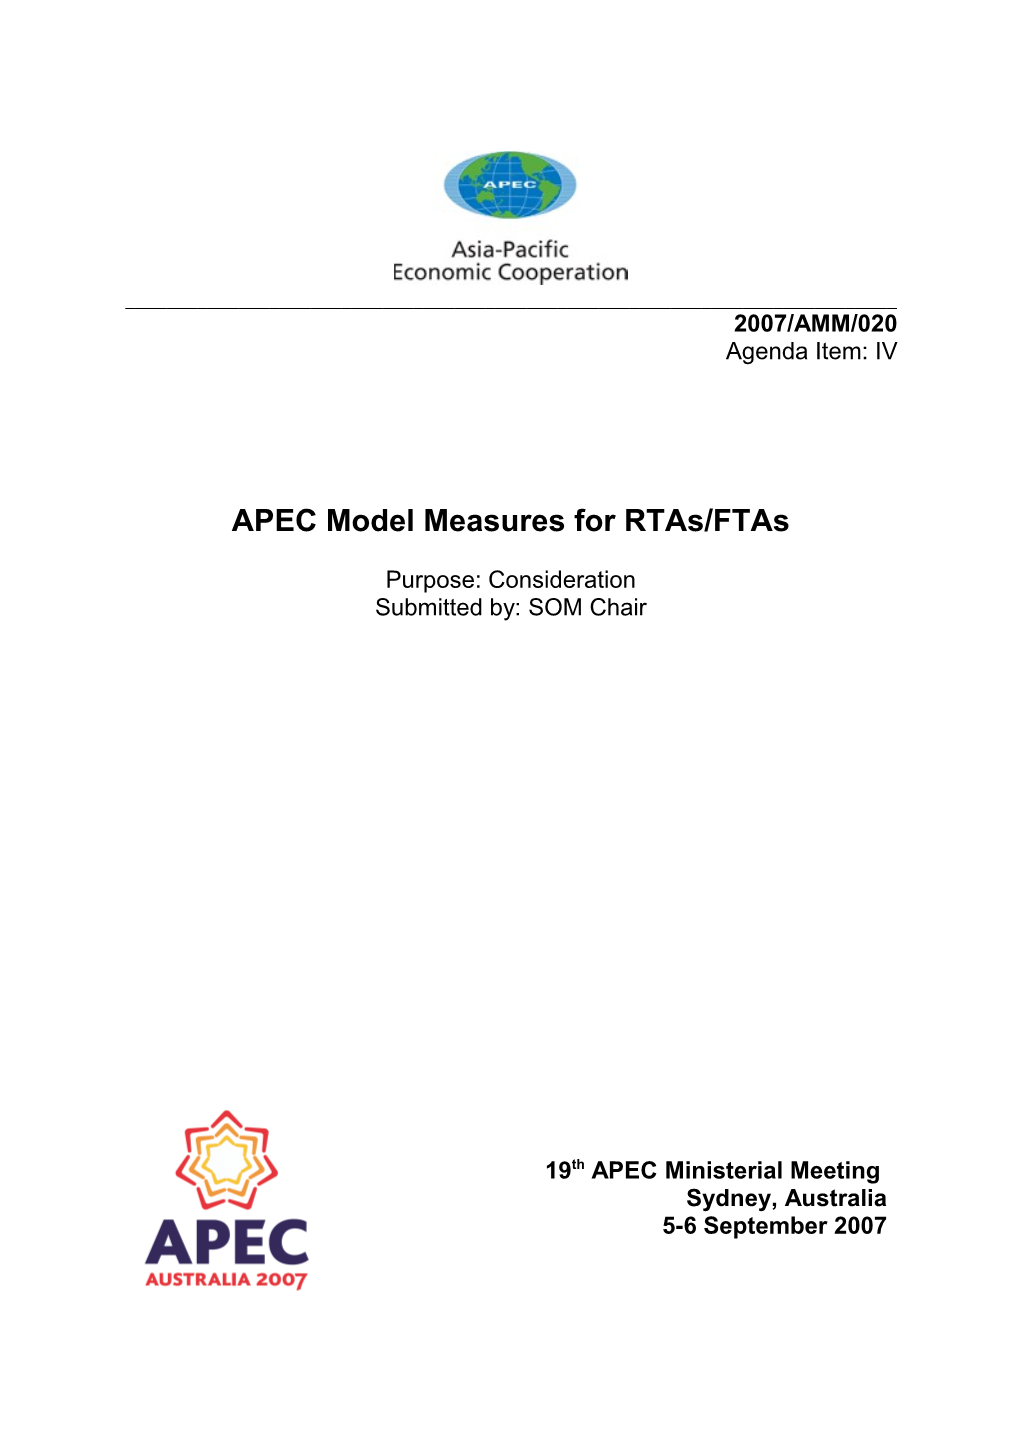 APEC Model Measures for Rtas/Ftas